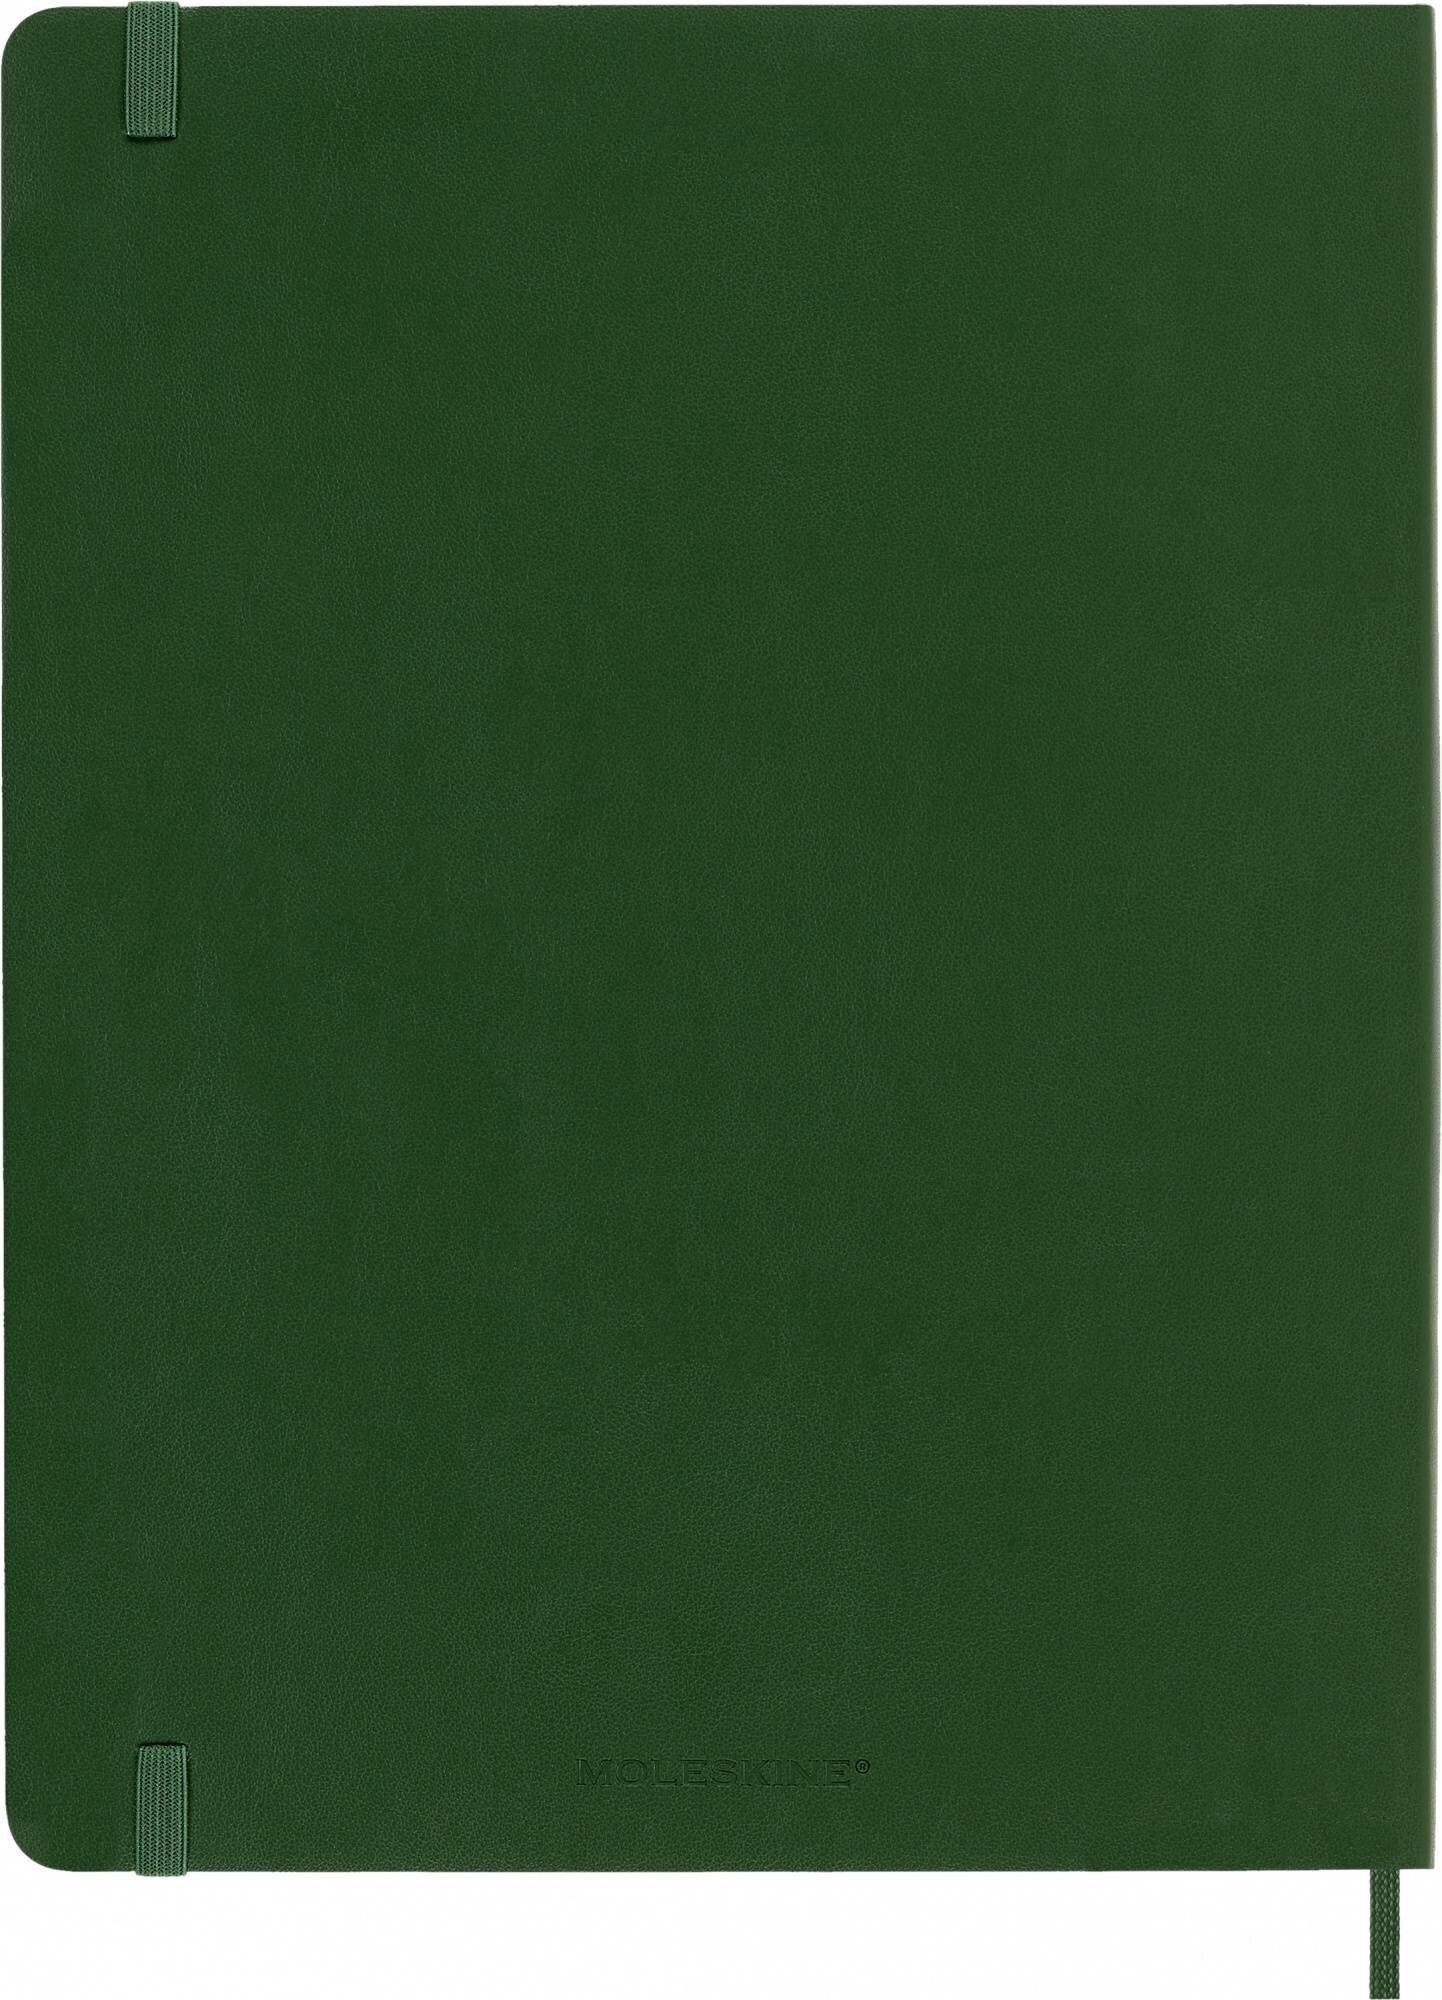 Блокнот Moleskine CLASSIC SOFT XLarge 190х250мм 192стр. нелинованный мягкая обложка зеленый 6 шт./кор. - фото №10